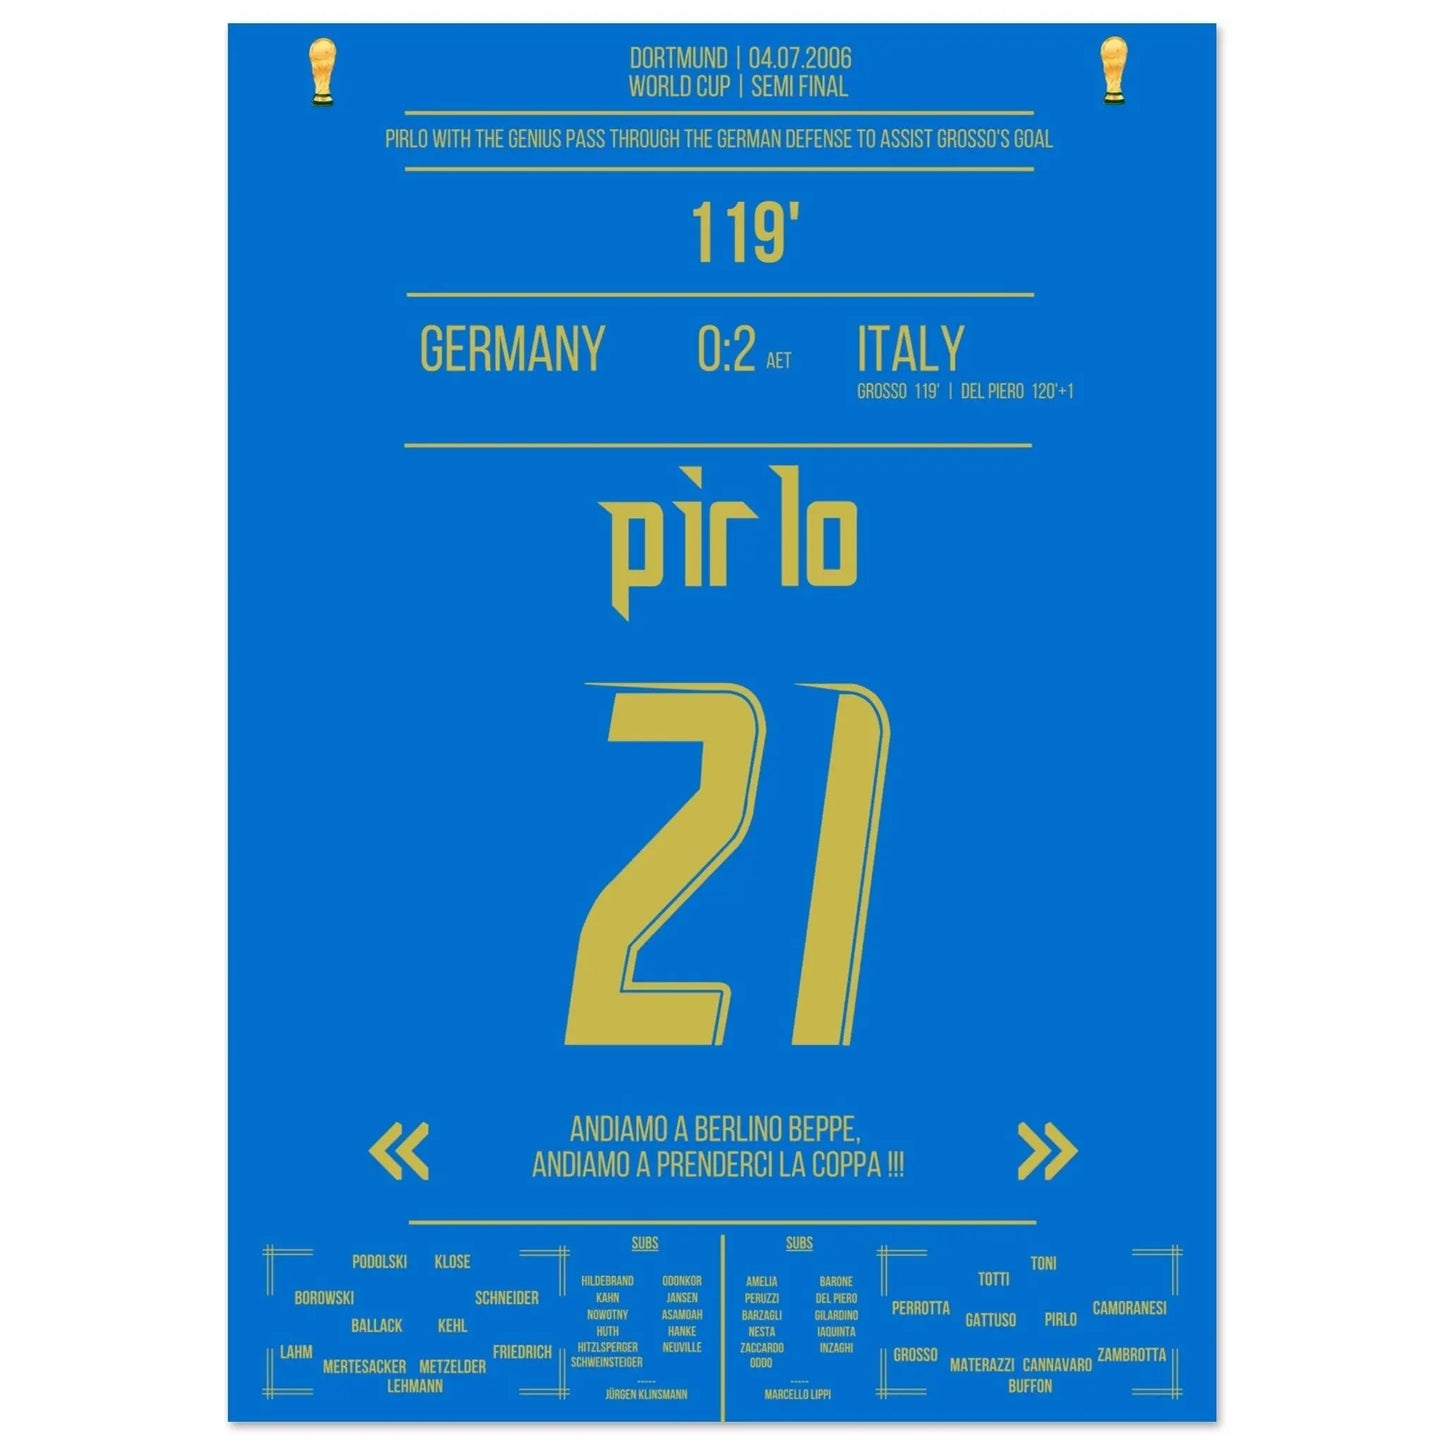 El pase soñado de Pirlo atravesó la defensa alemana para poner el 1-0 gracias a Grosso